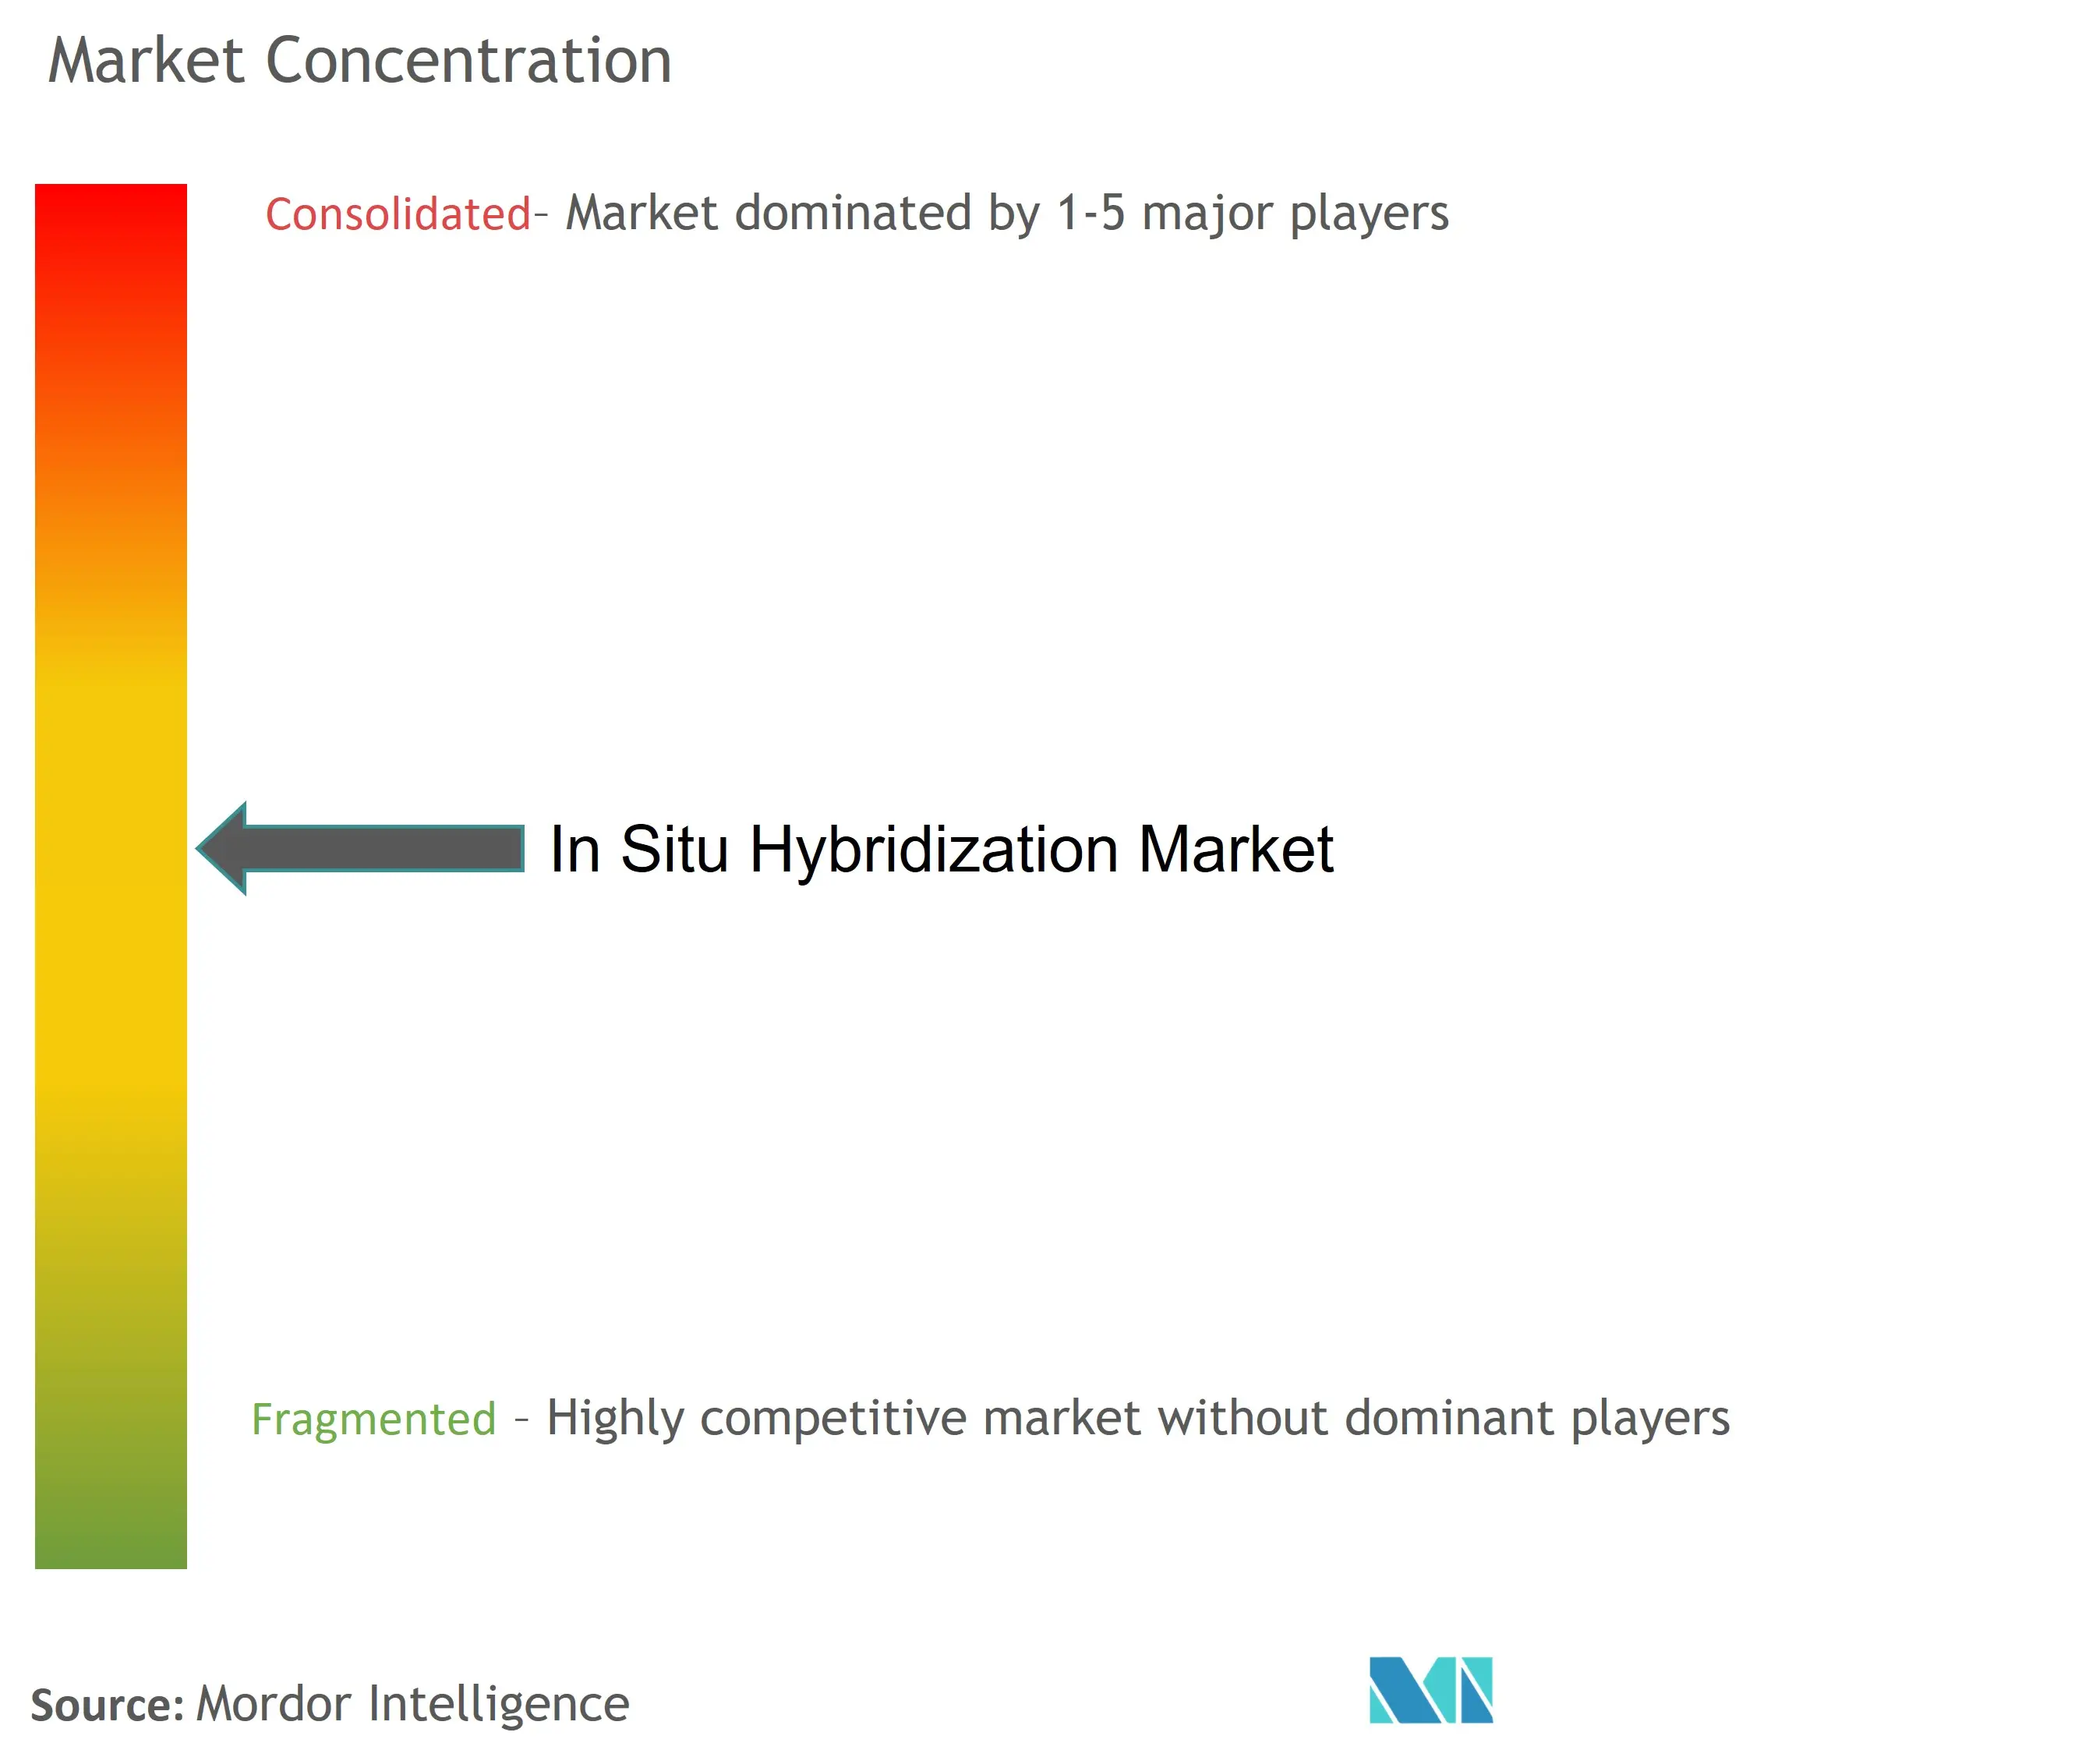 Hybridation in situConcentration du marché